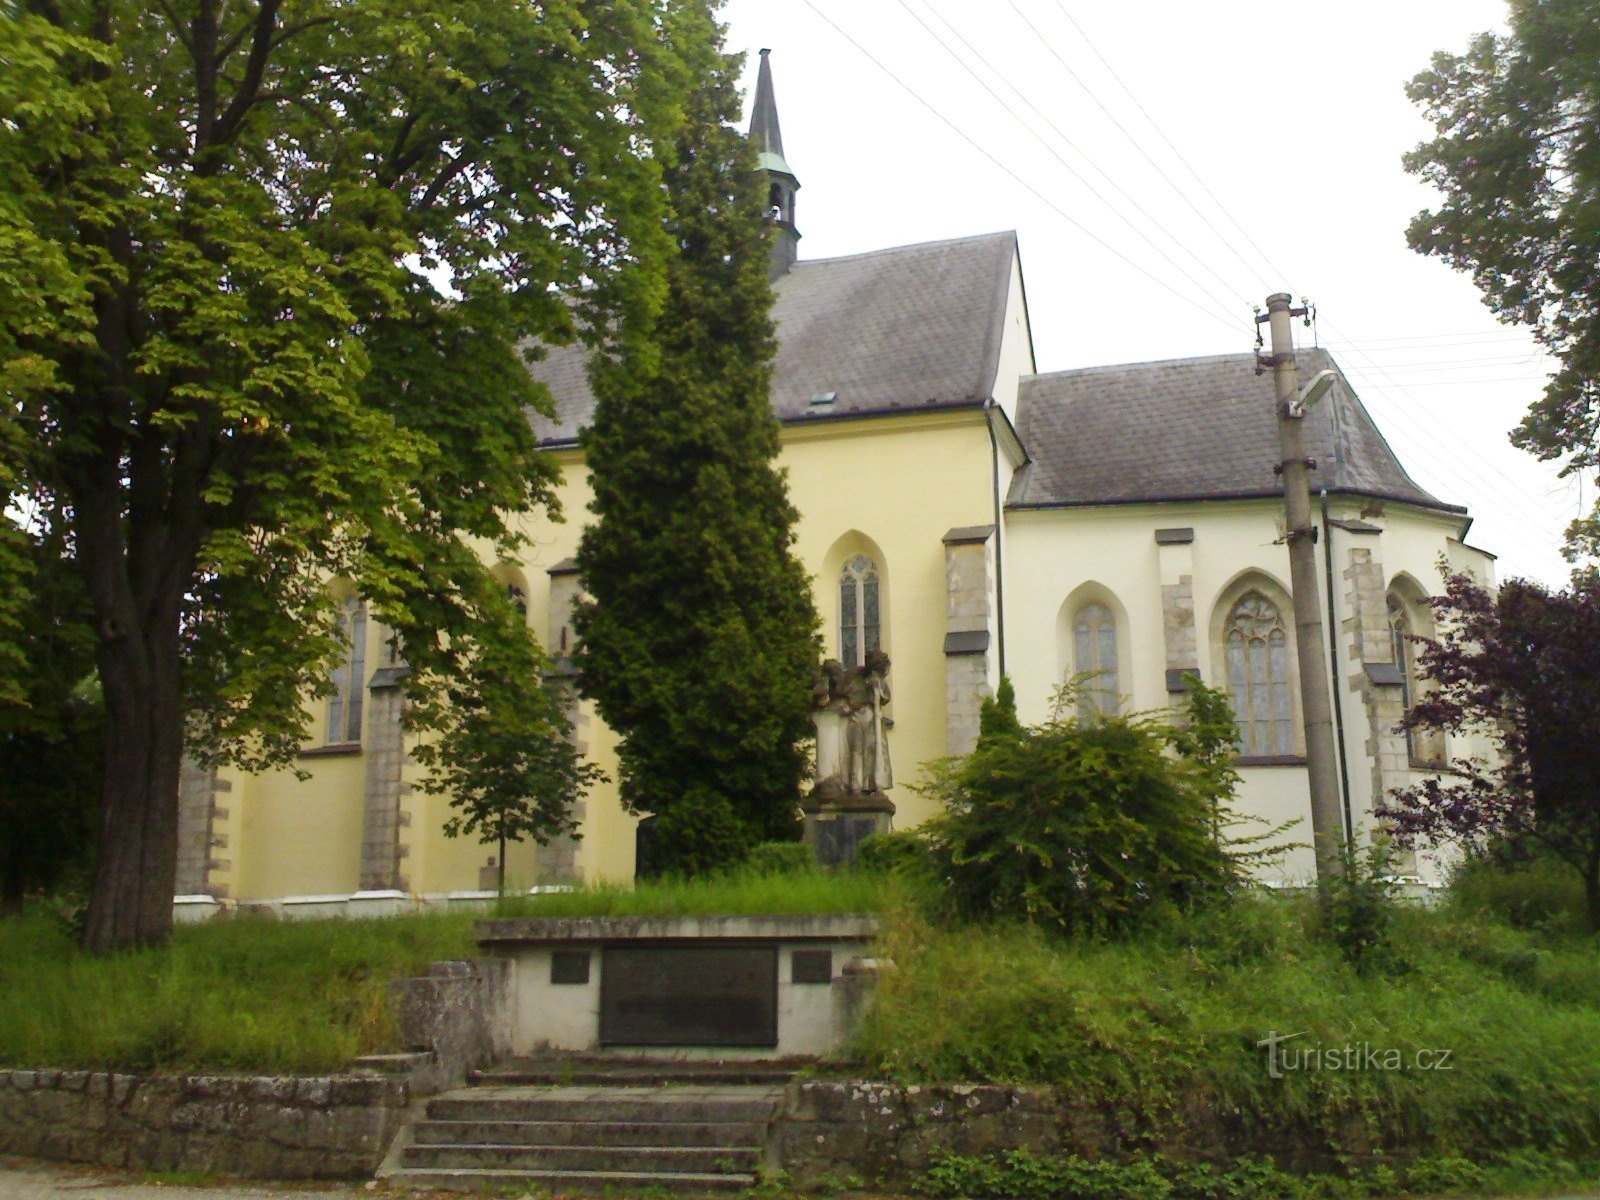 Rovensko pod Troskami - crkva sv. Vaclava